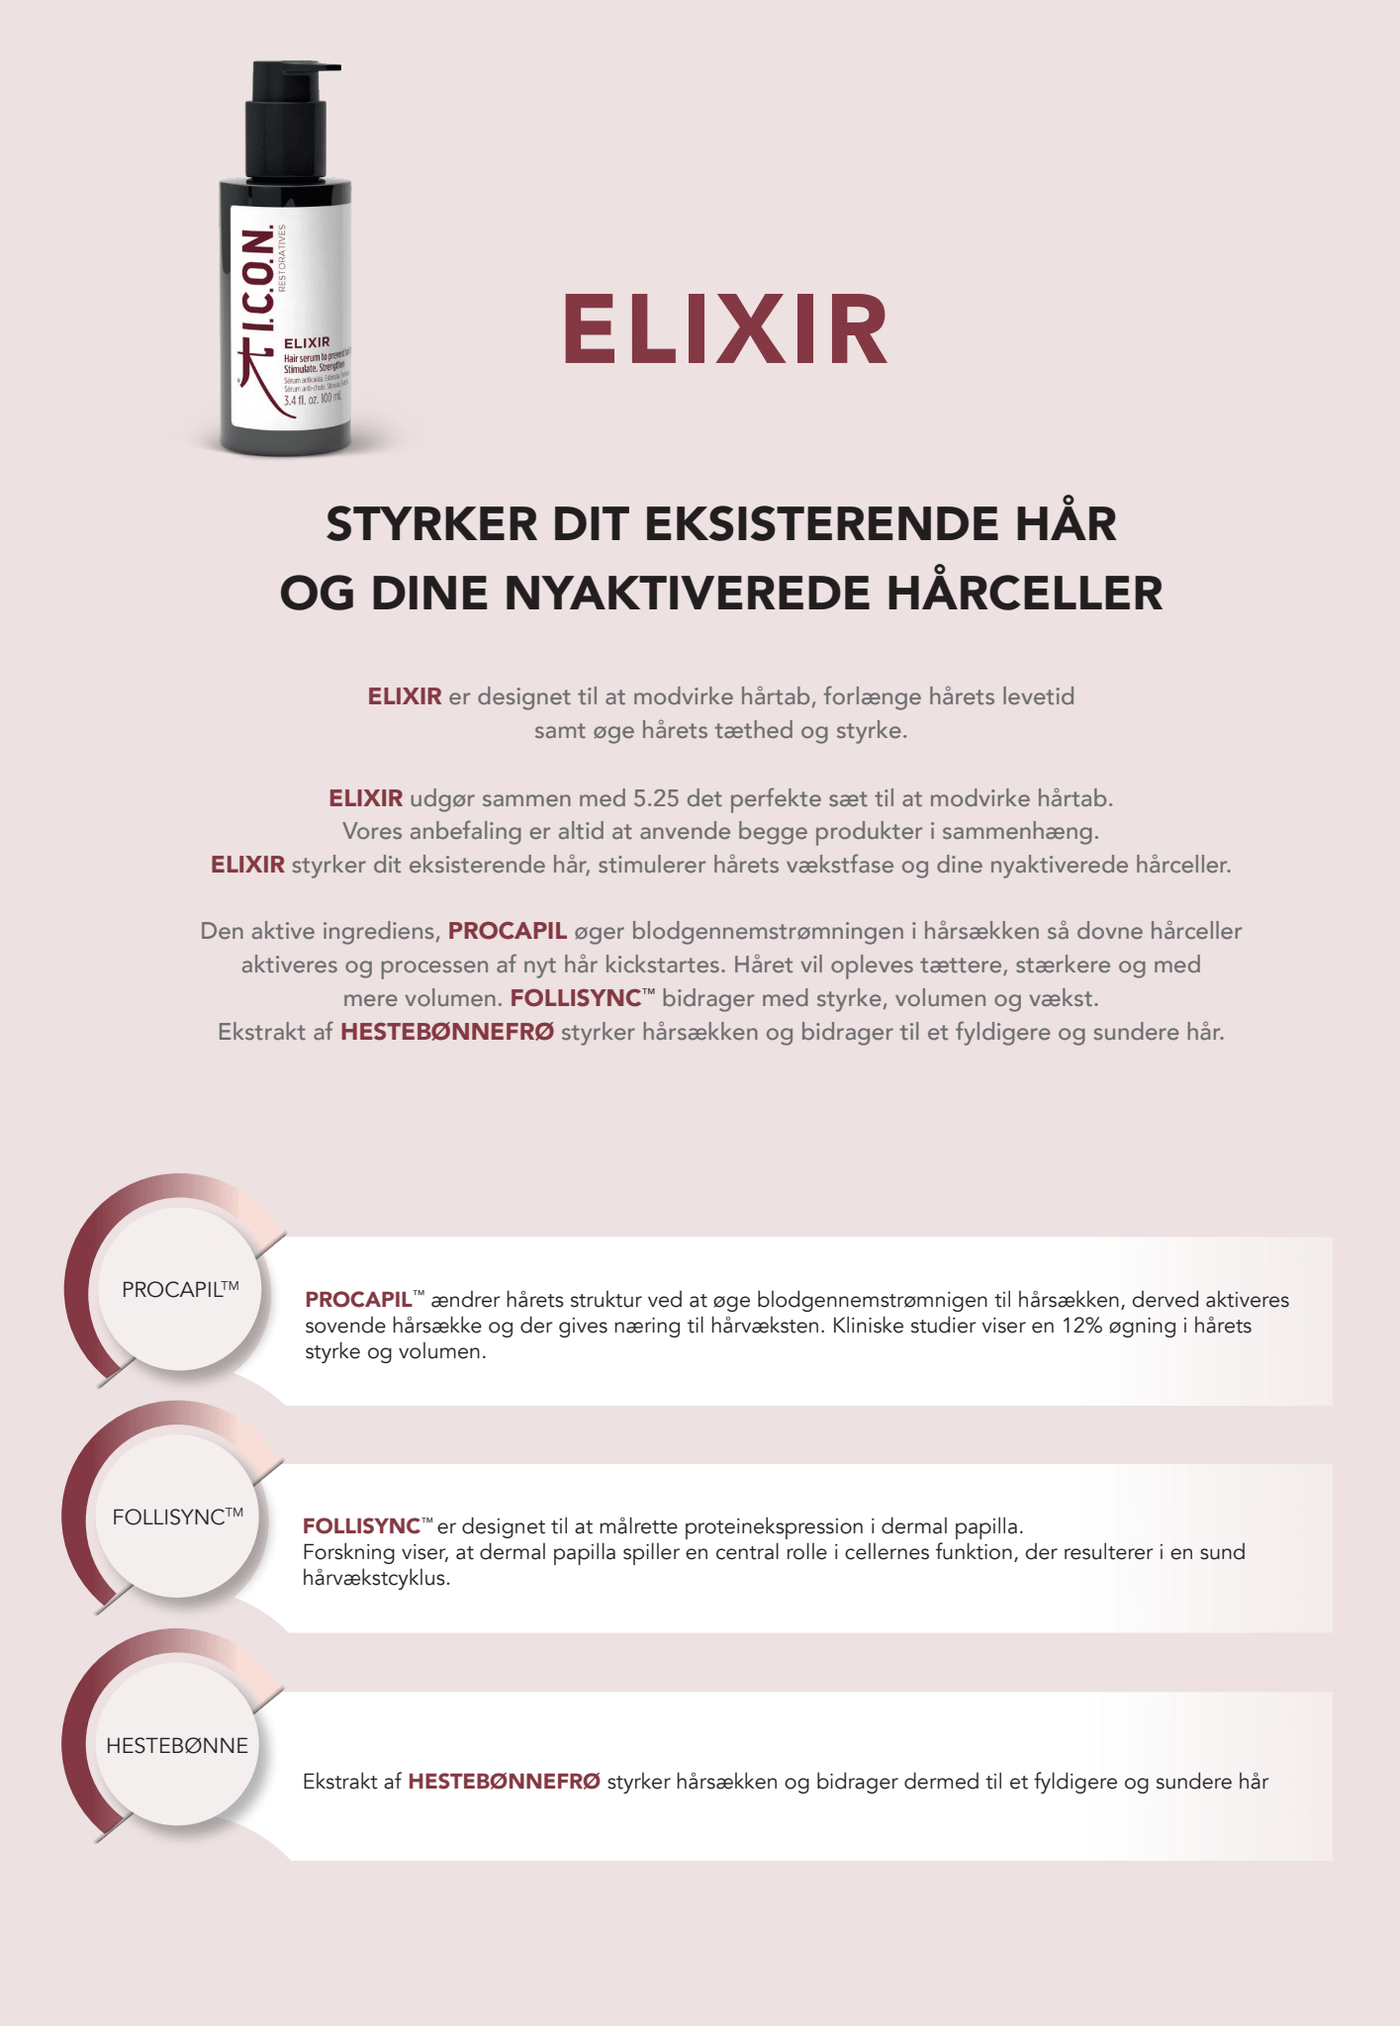 ELIXIR - Styrker dit hår og dine nyaktiverede hårceller